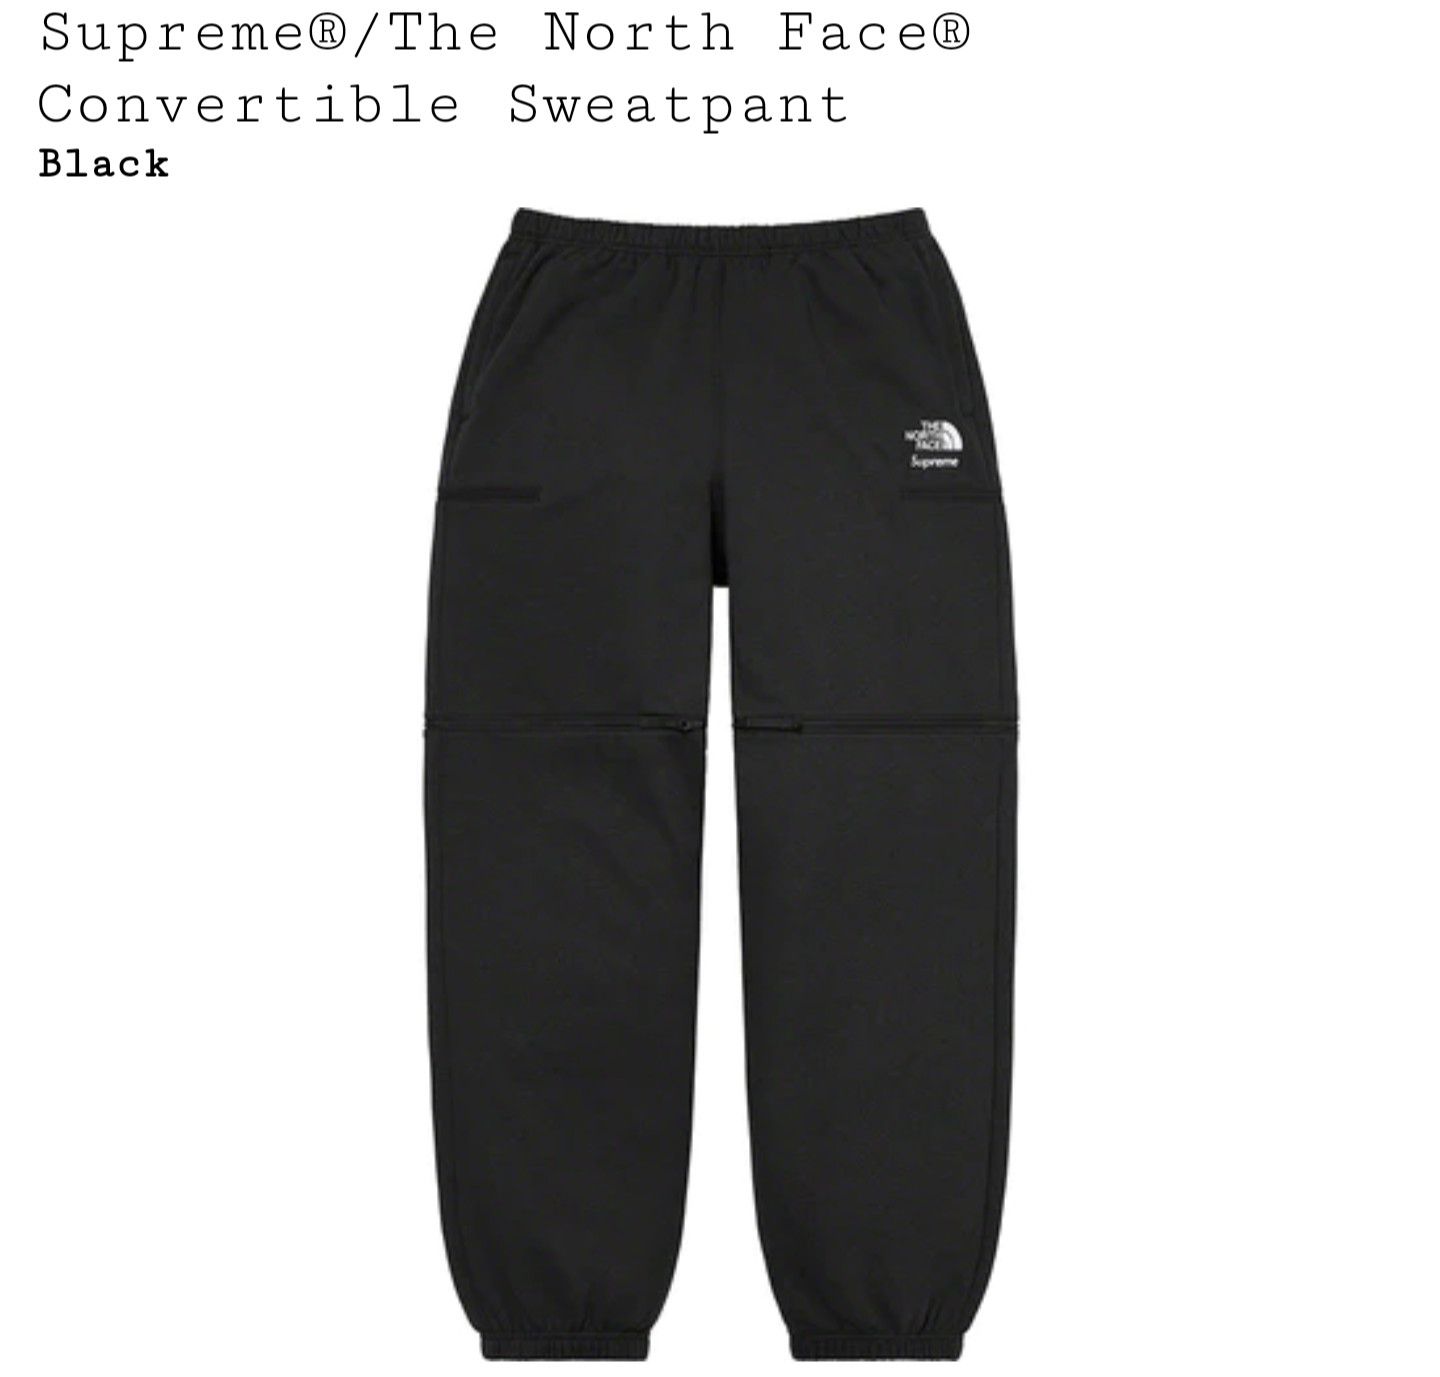 Supreme Supreme x The North Face Convertible Sweatpant | Grailed